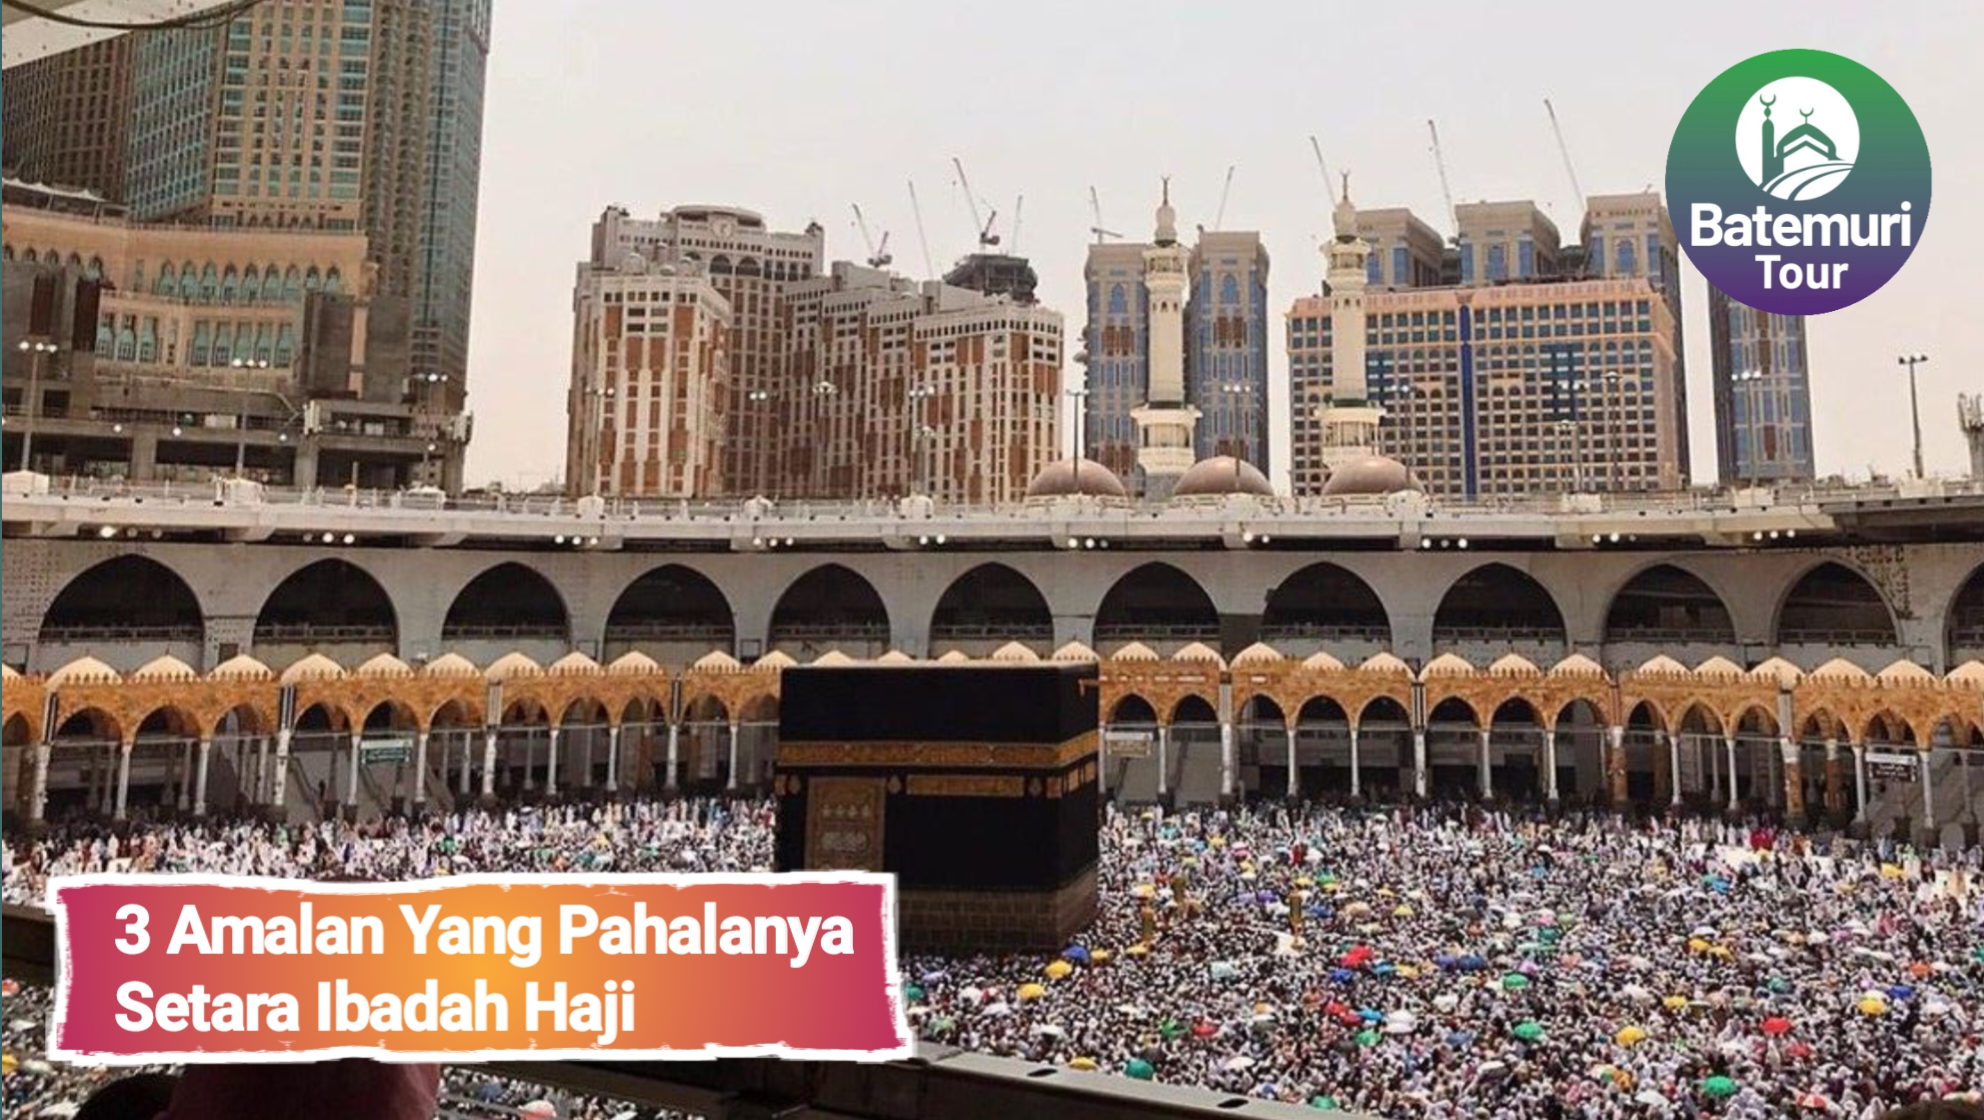 3 Amalan yang Pahalanya Setara Ibadah Haji